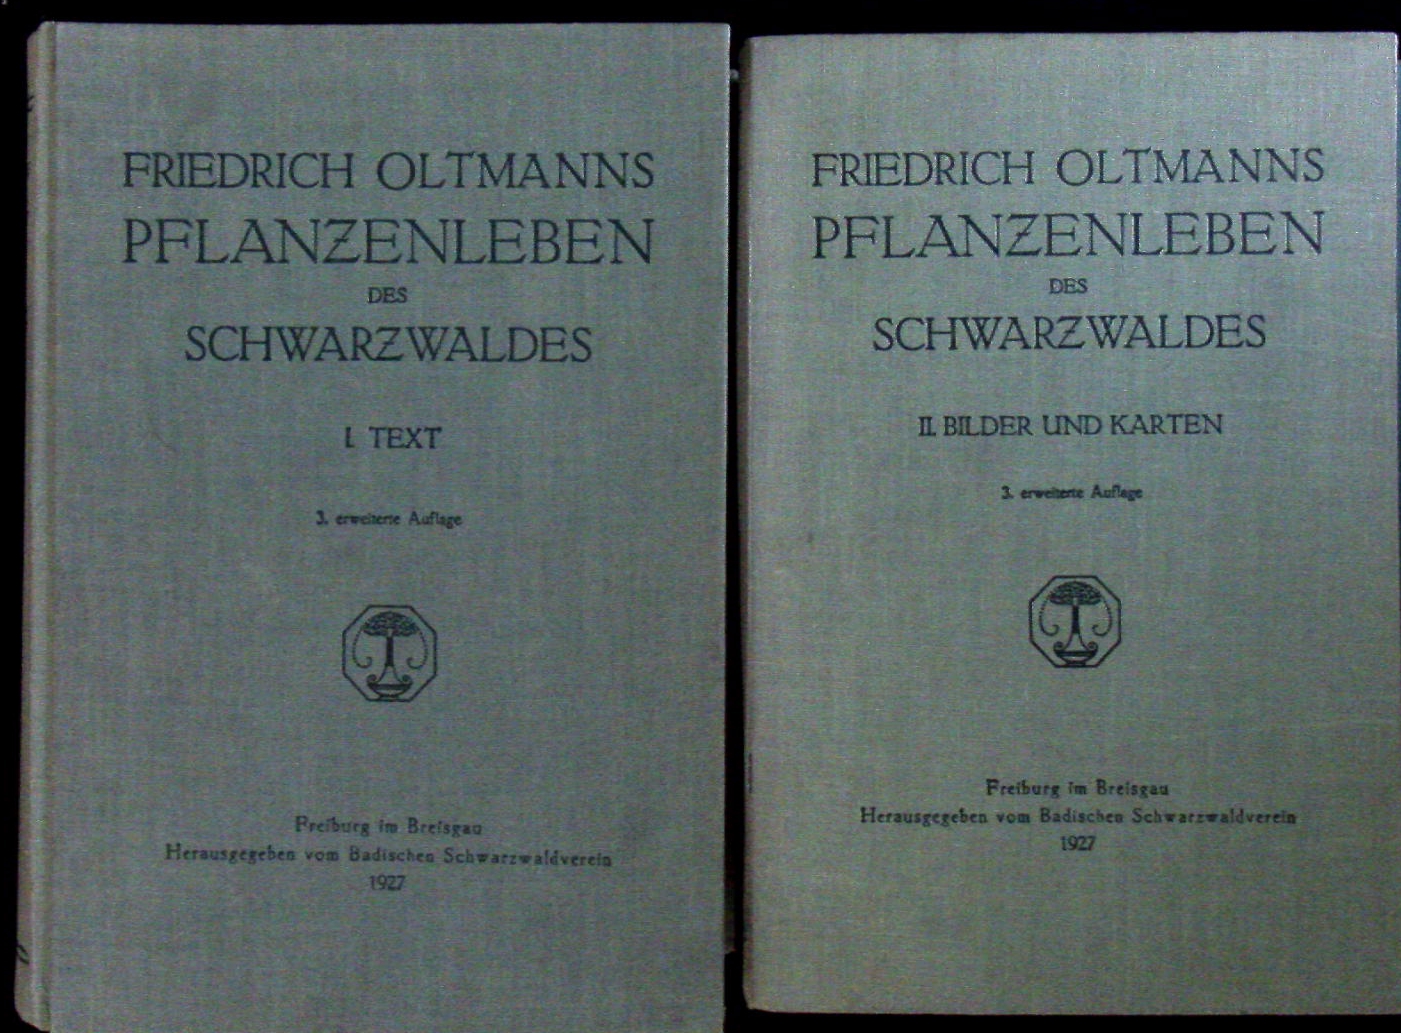 BOTANIK.-  OLTMANNS, Friedrich: - Das Pflanzenleben des Schwarzwaldes. !. Textband + II. Bilder und Karten.